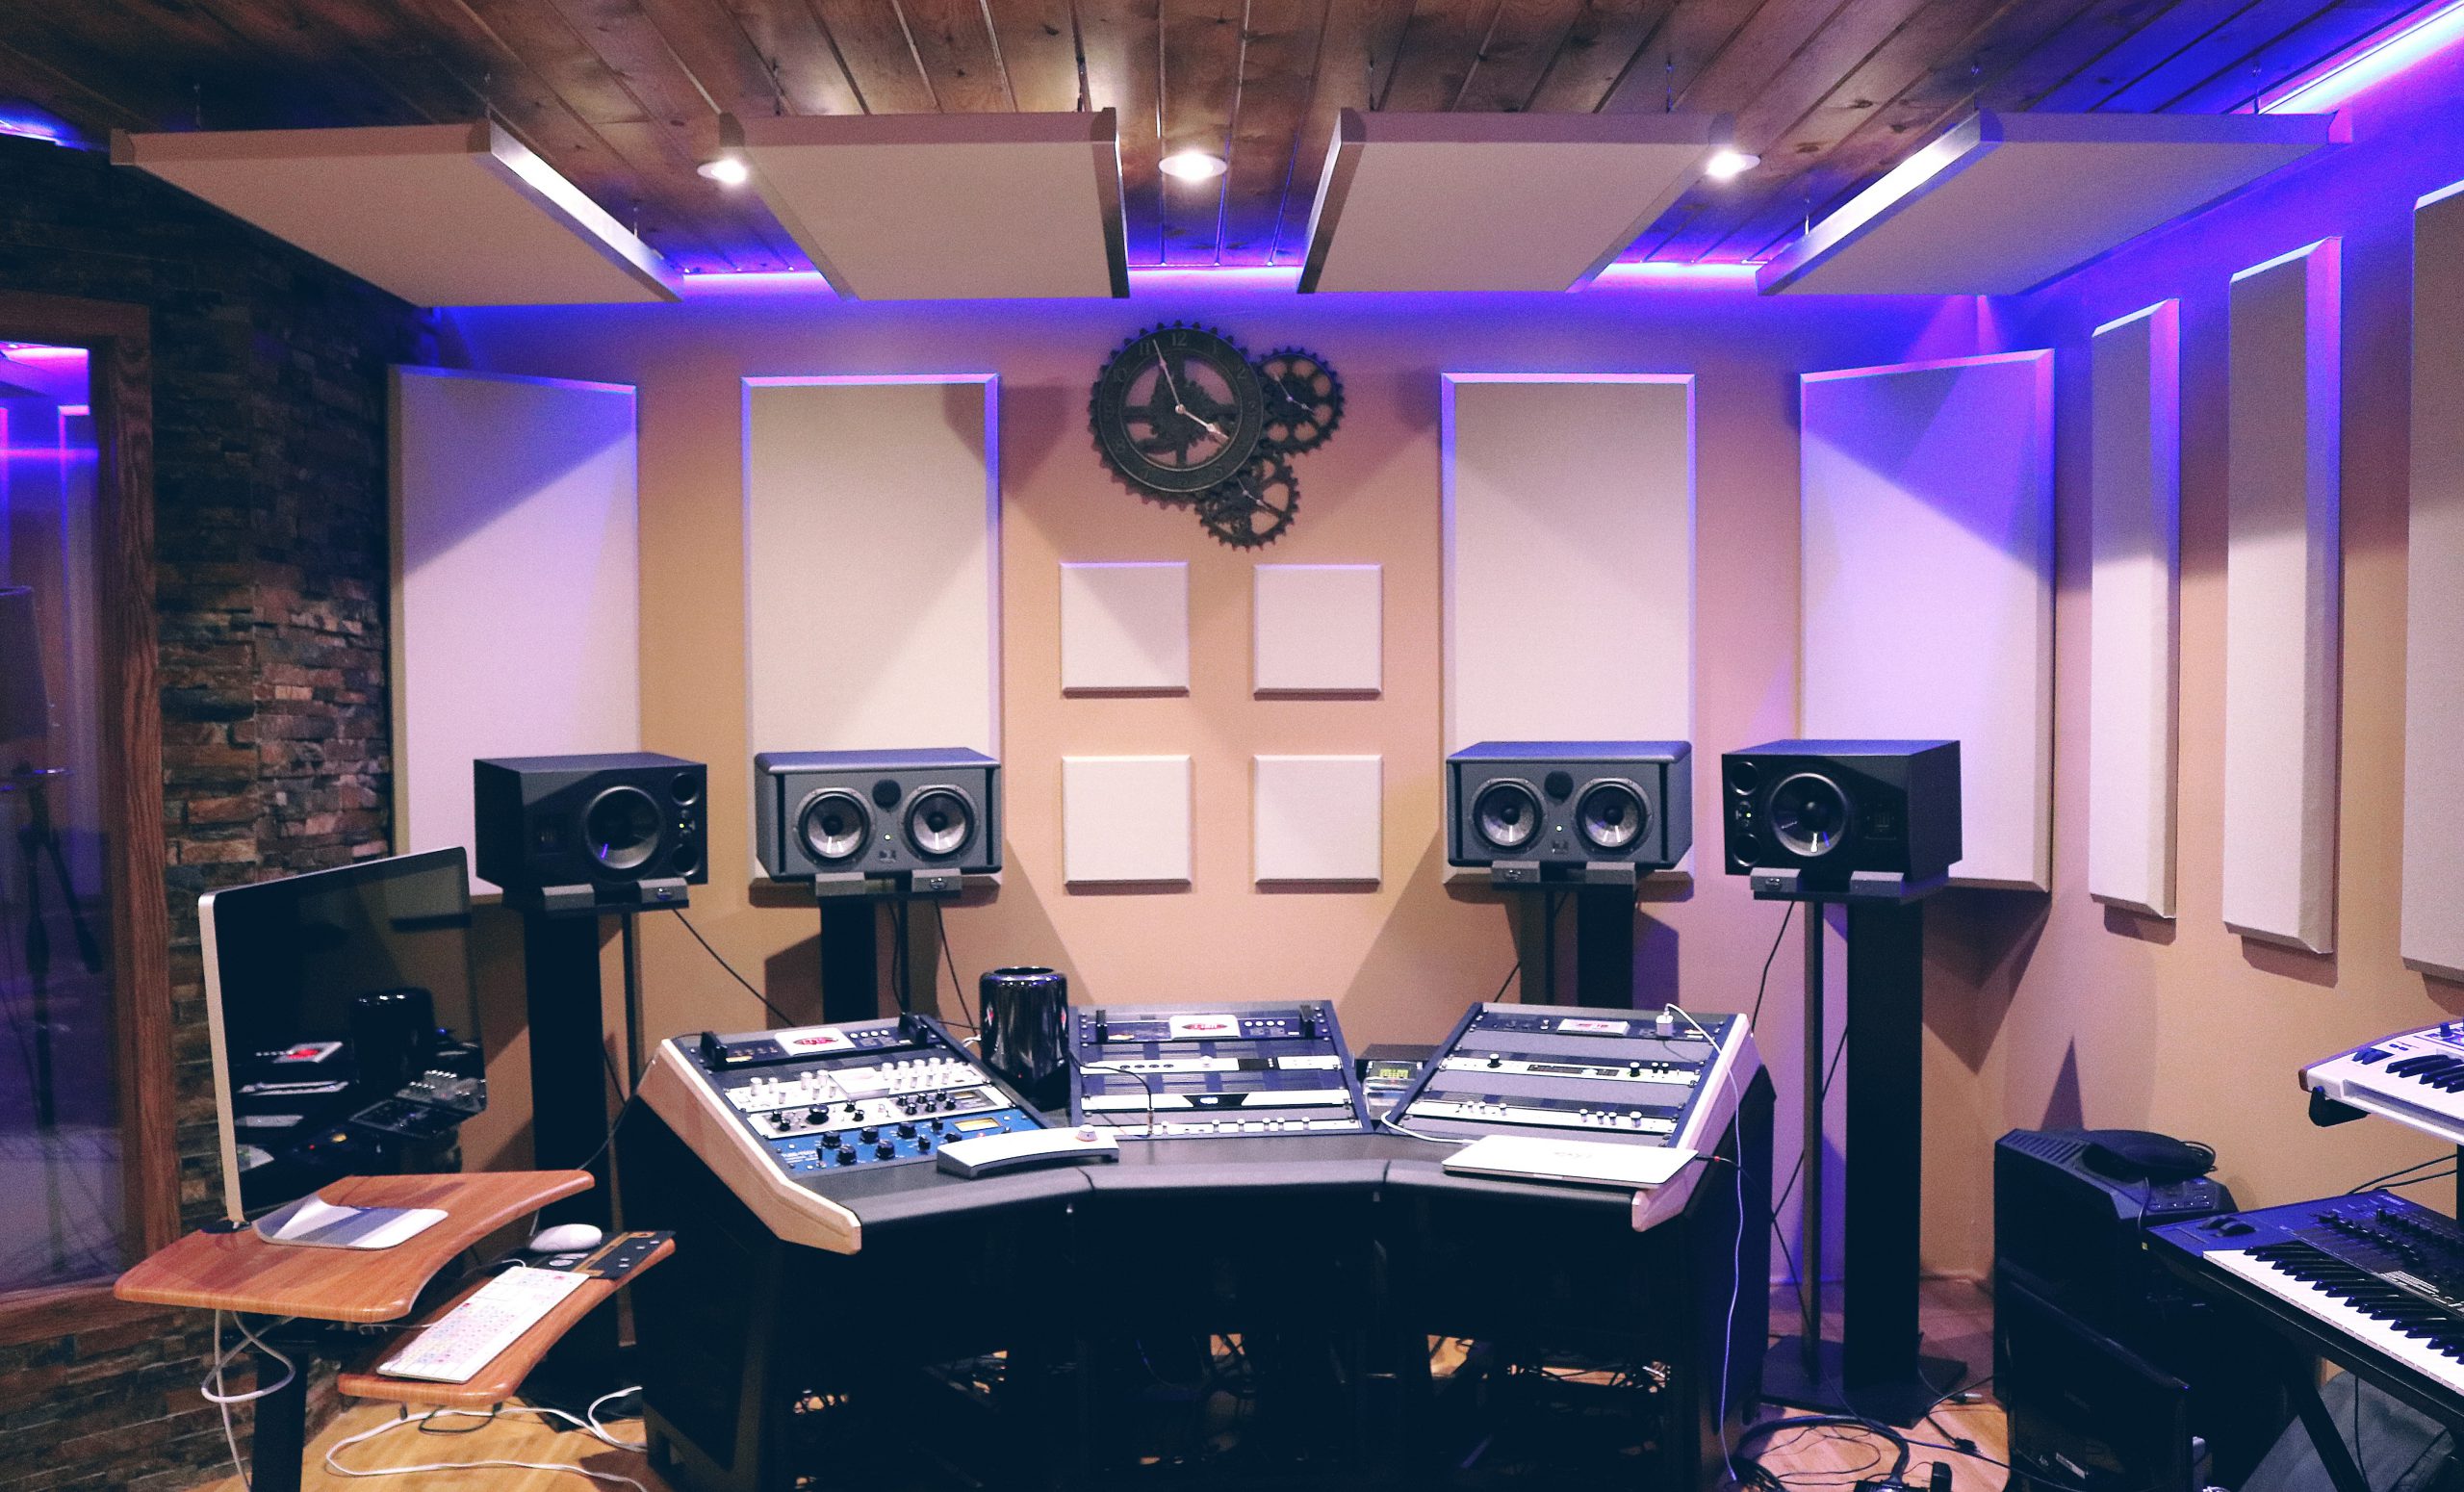 Details about music recording studios – dineremingtons